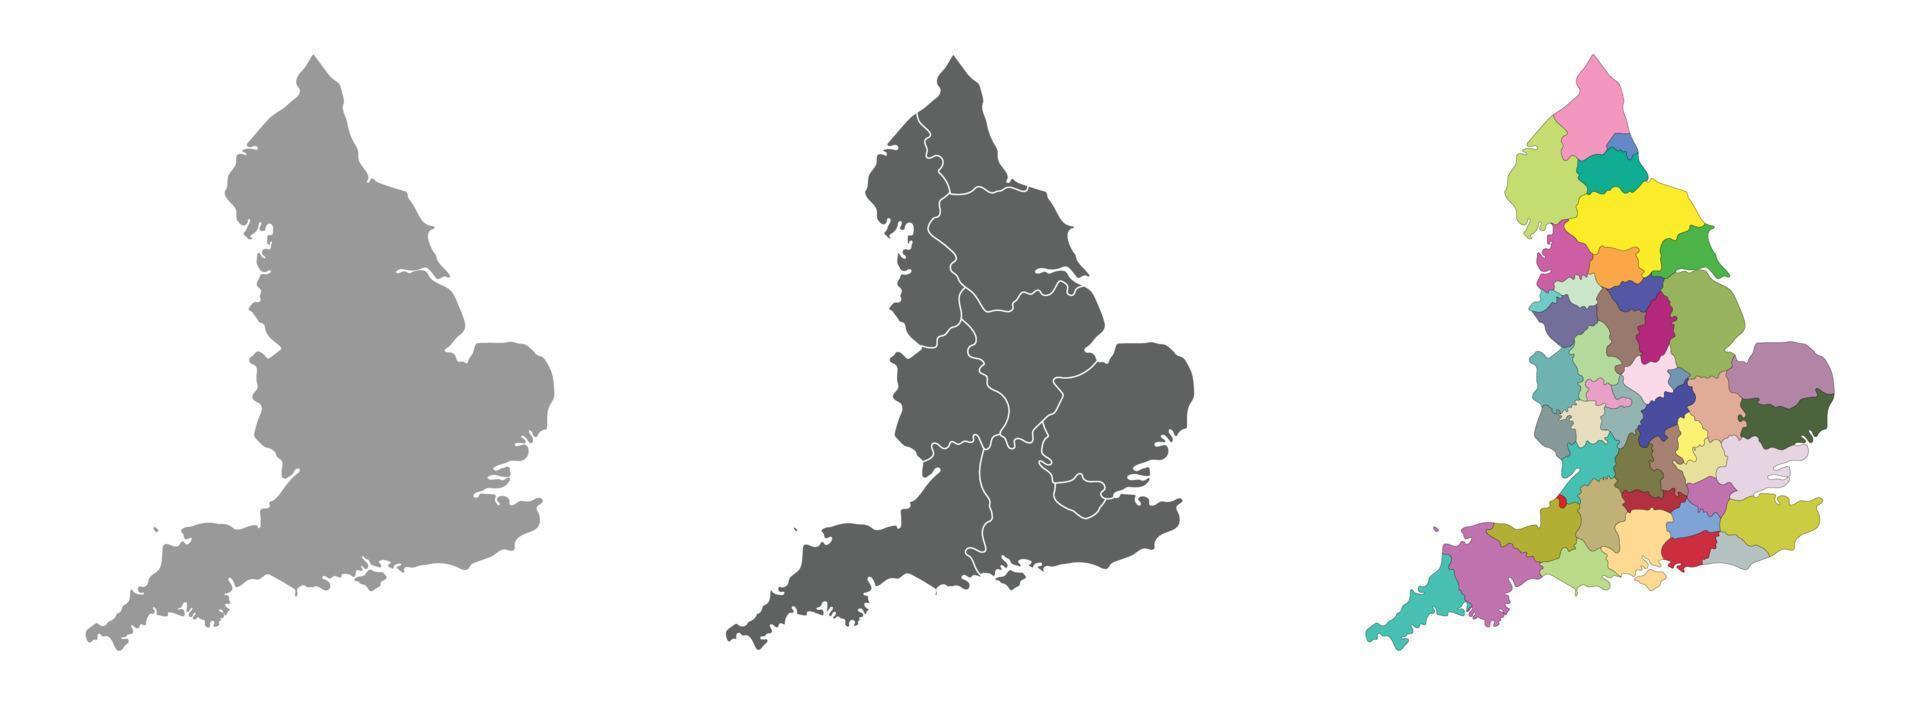 Inghilterra carta geografica impostato di grigio e multicolore amministrazioni regioni carta geografica vettore